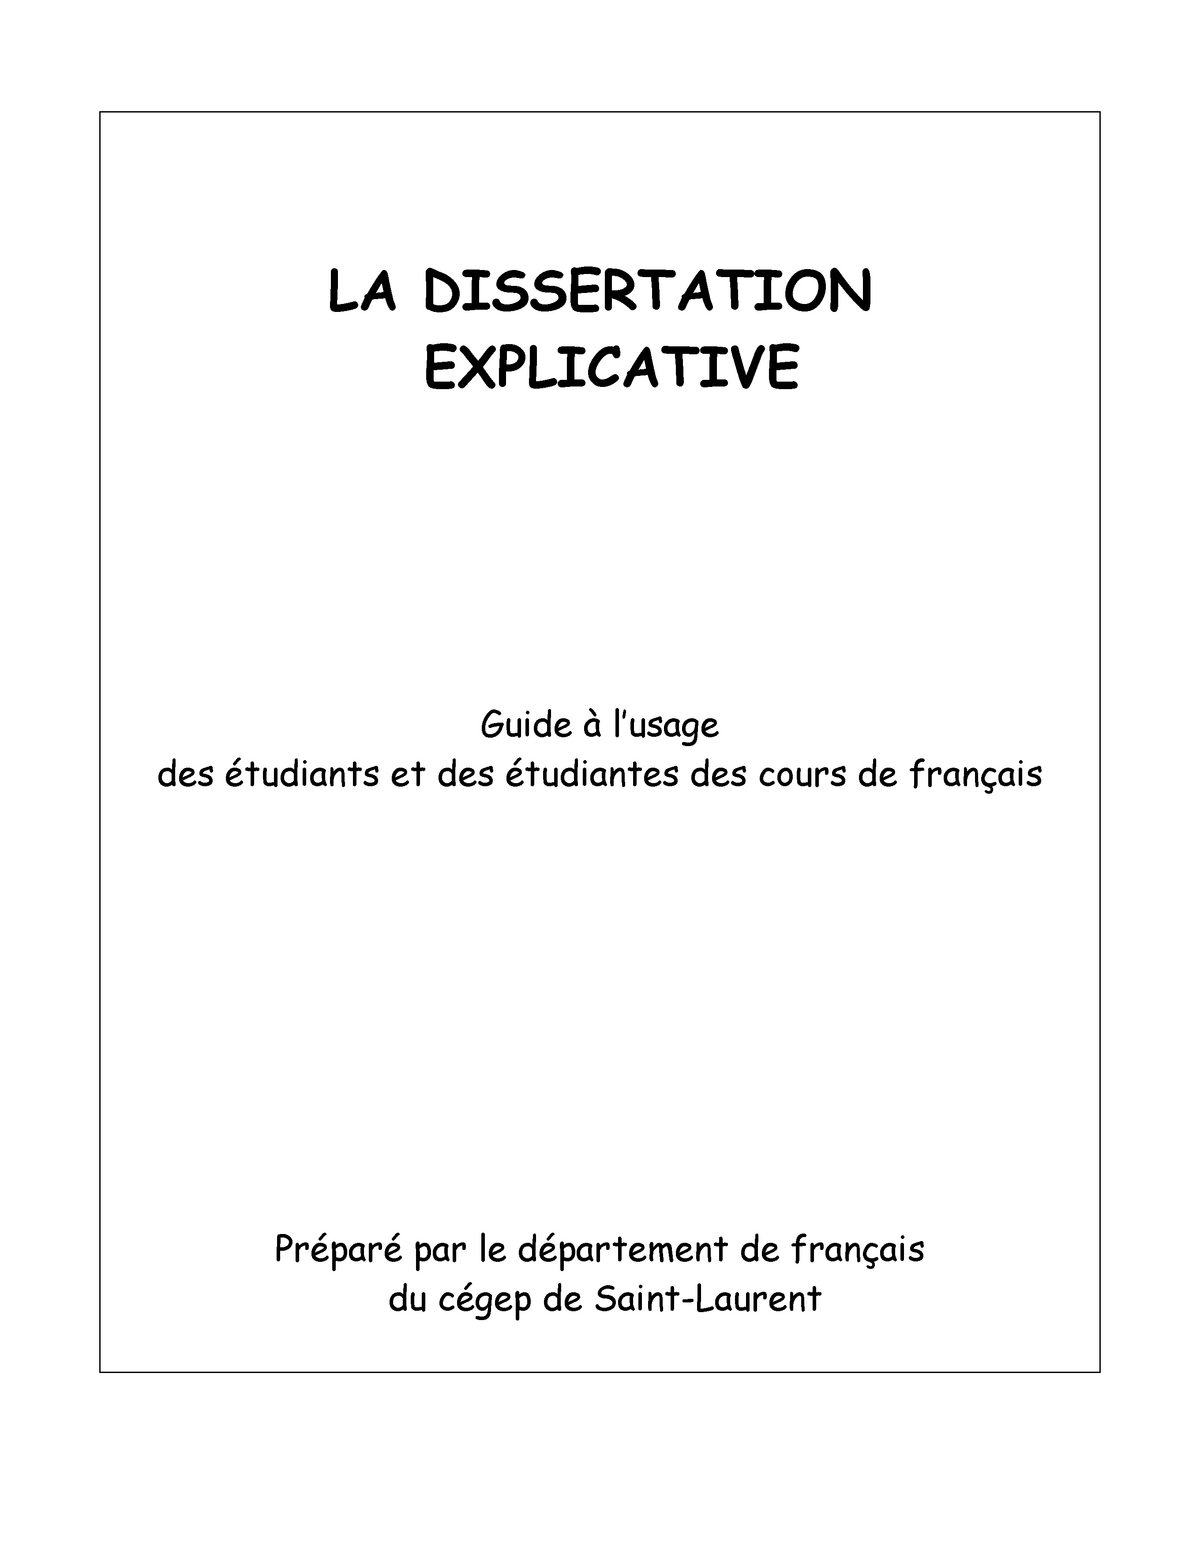 dissertation explicative 99 francs